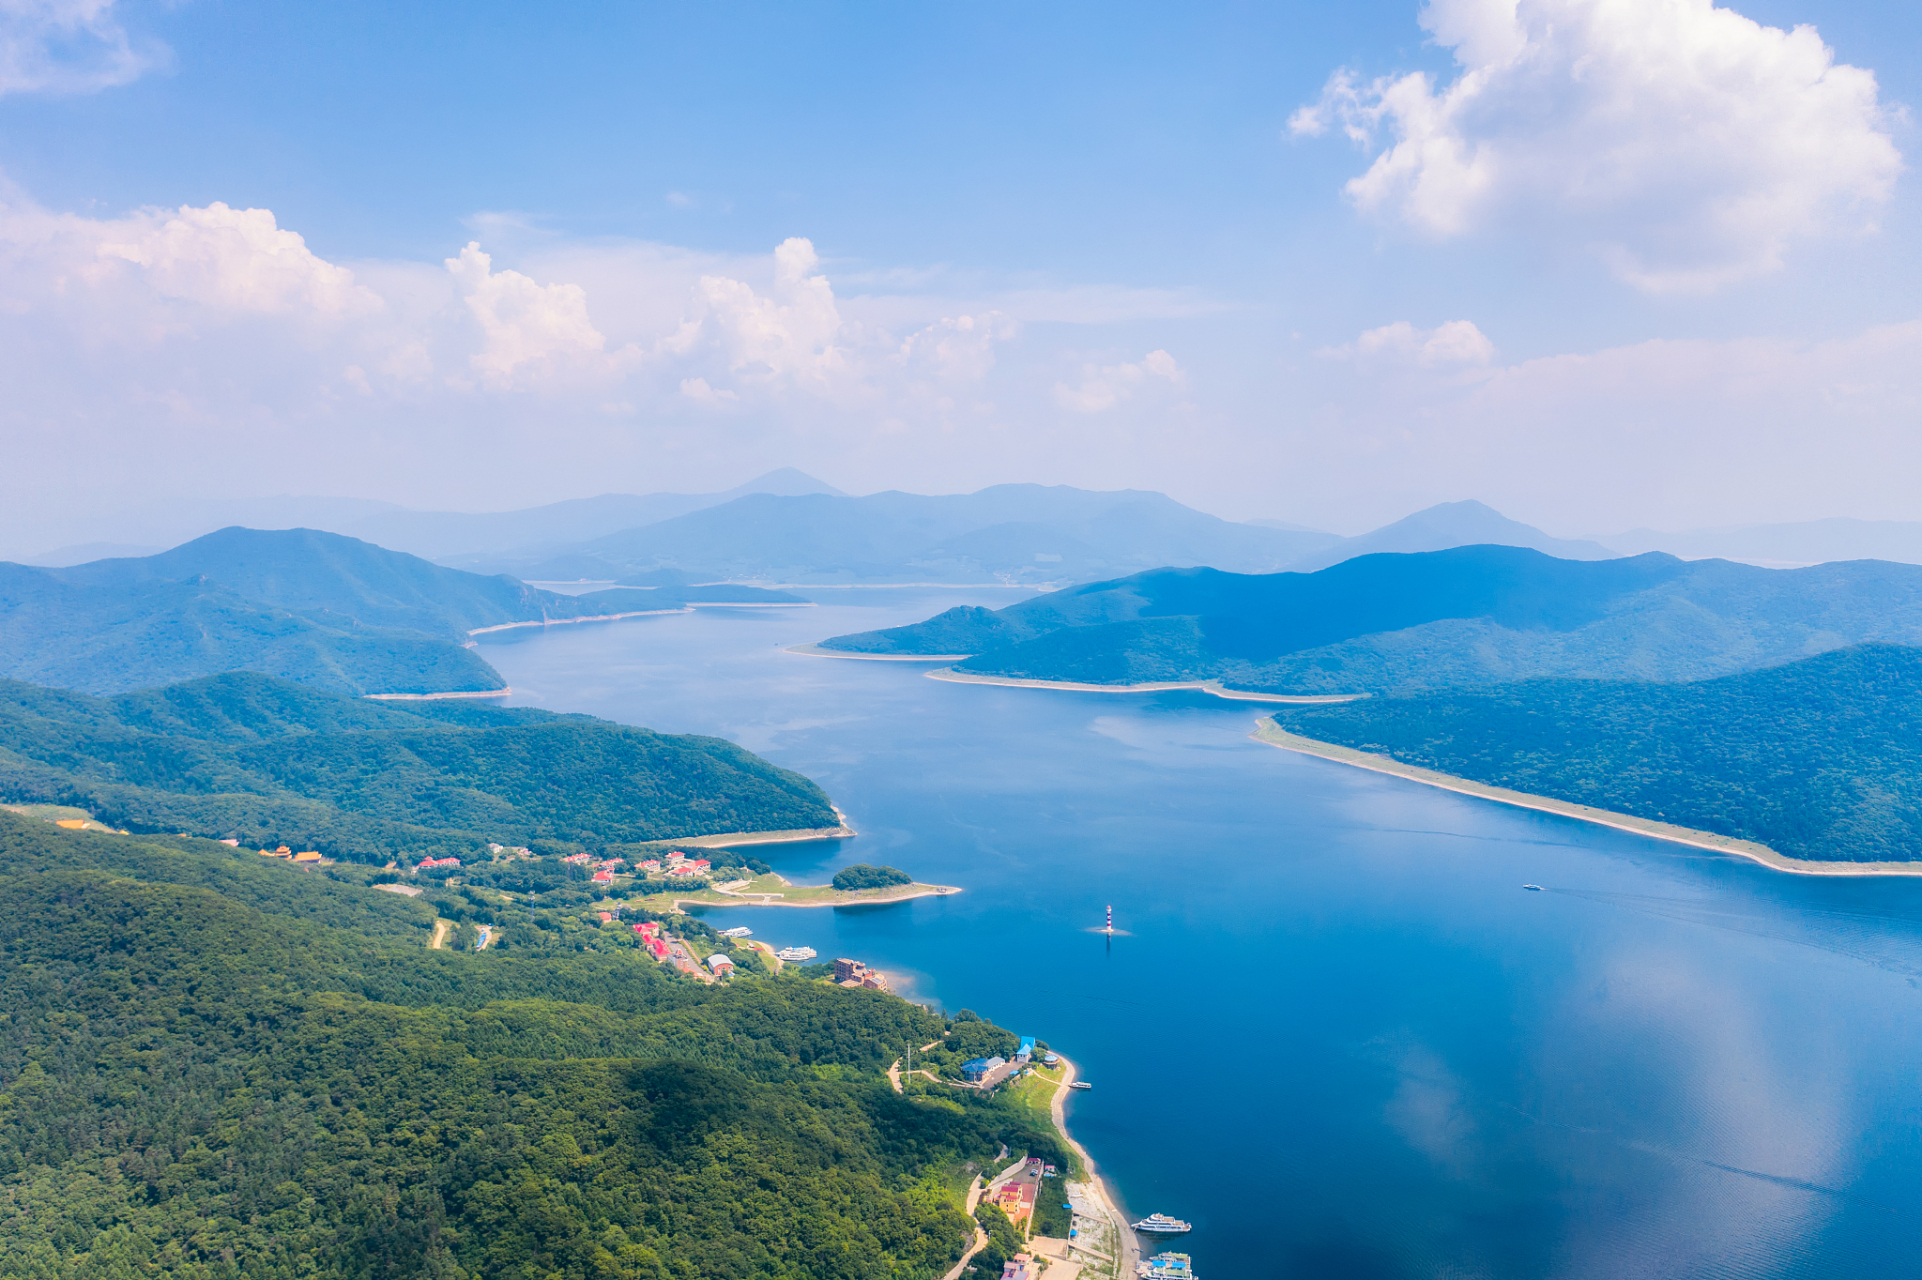 我推荐吉林松花湖! 松花湖,是中国著名的景区,也是国家4a级景区